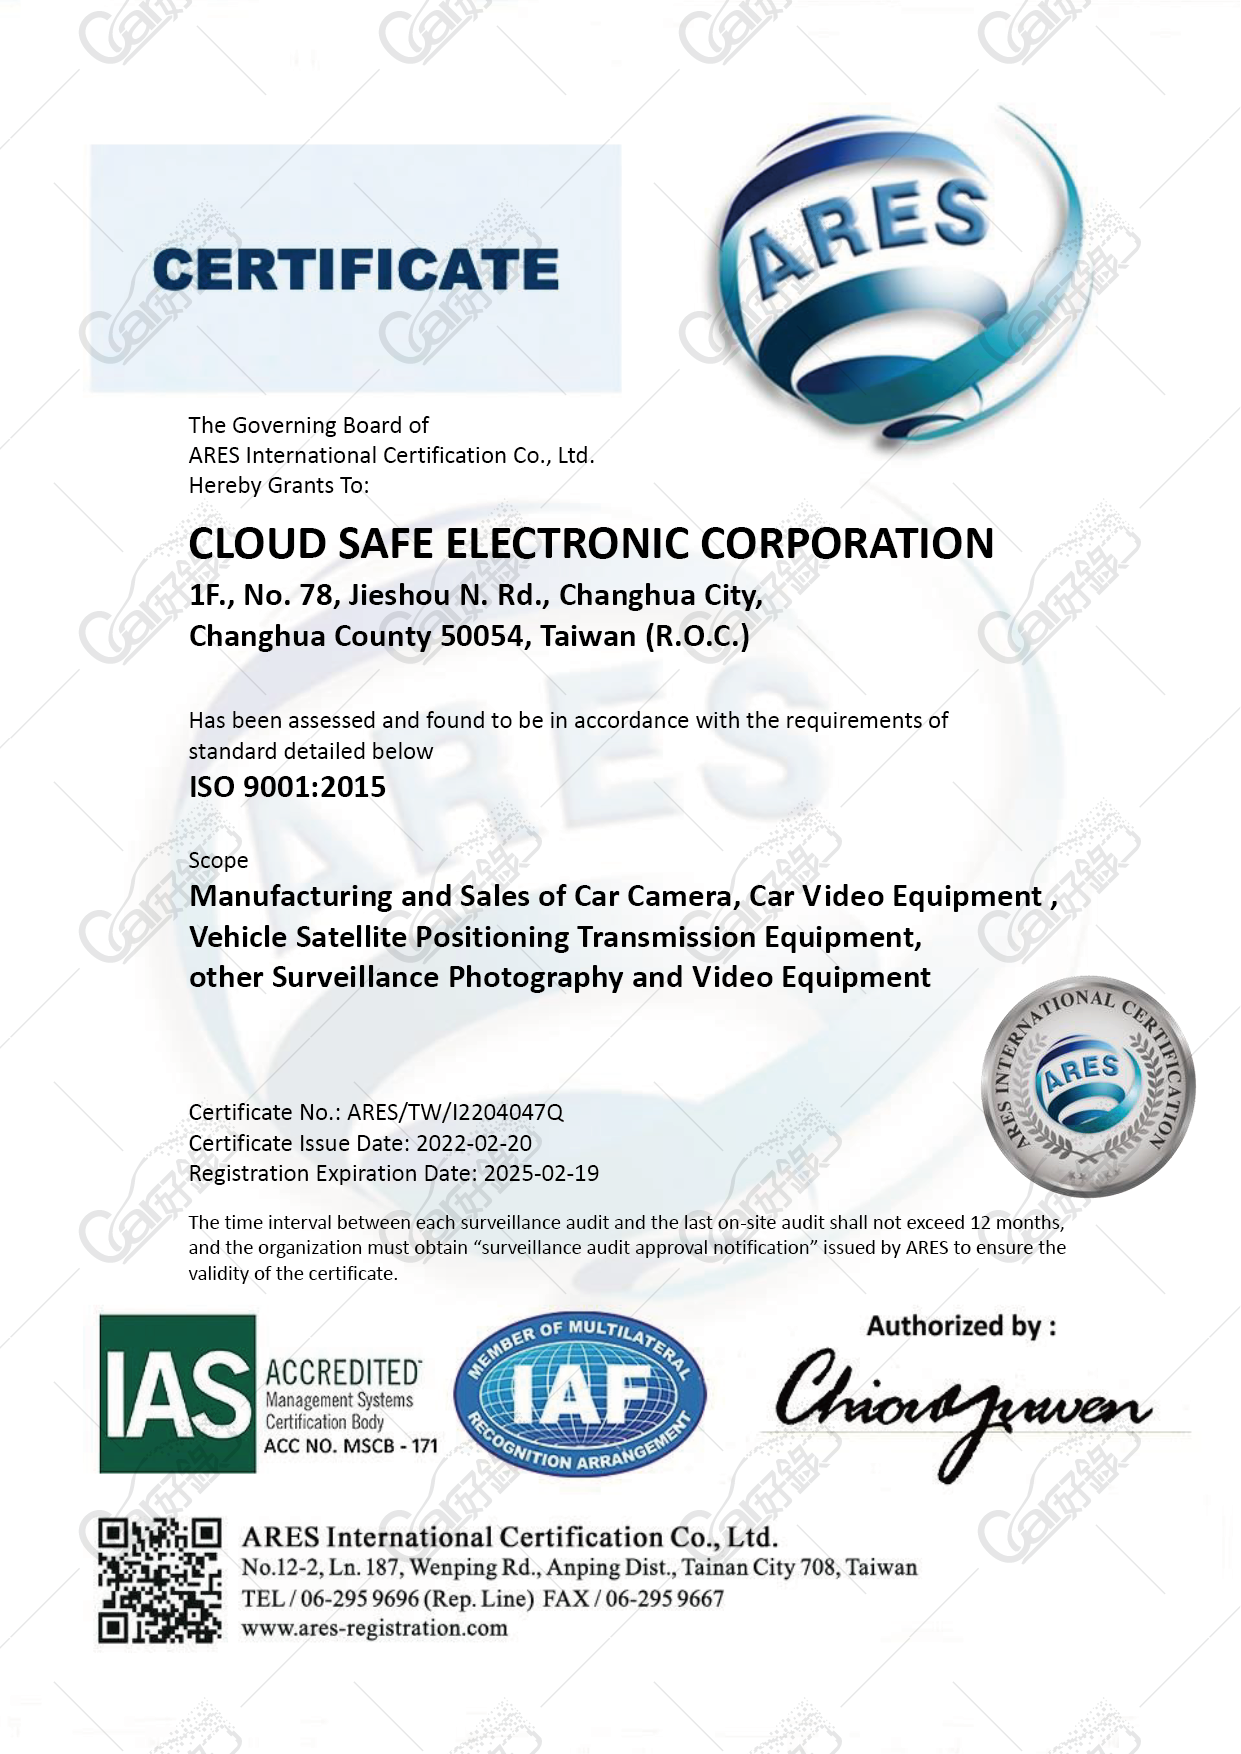 雲安電子,ISO:9001認證證書